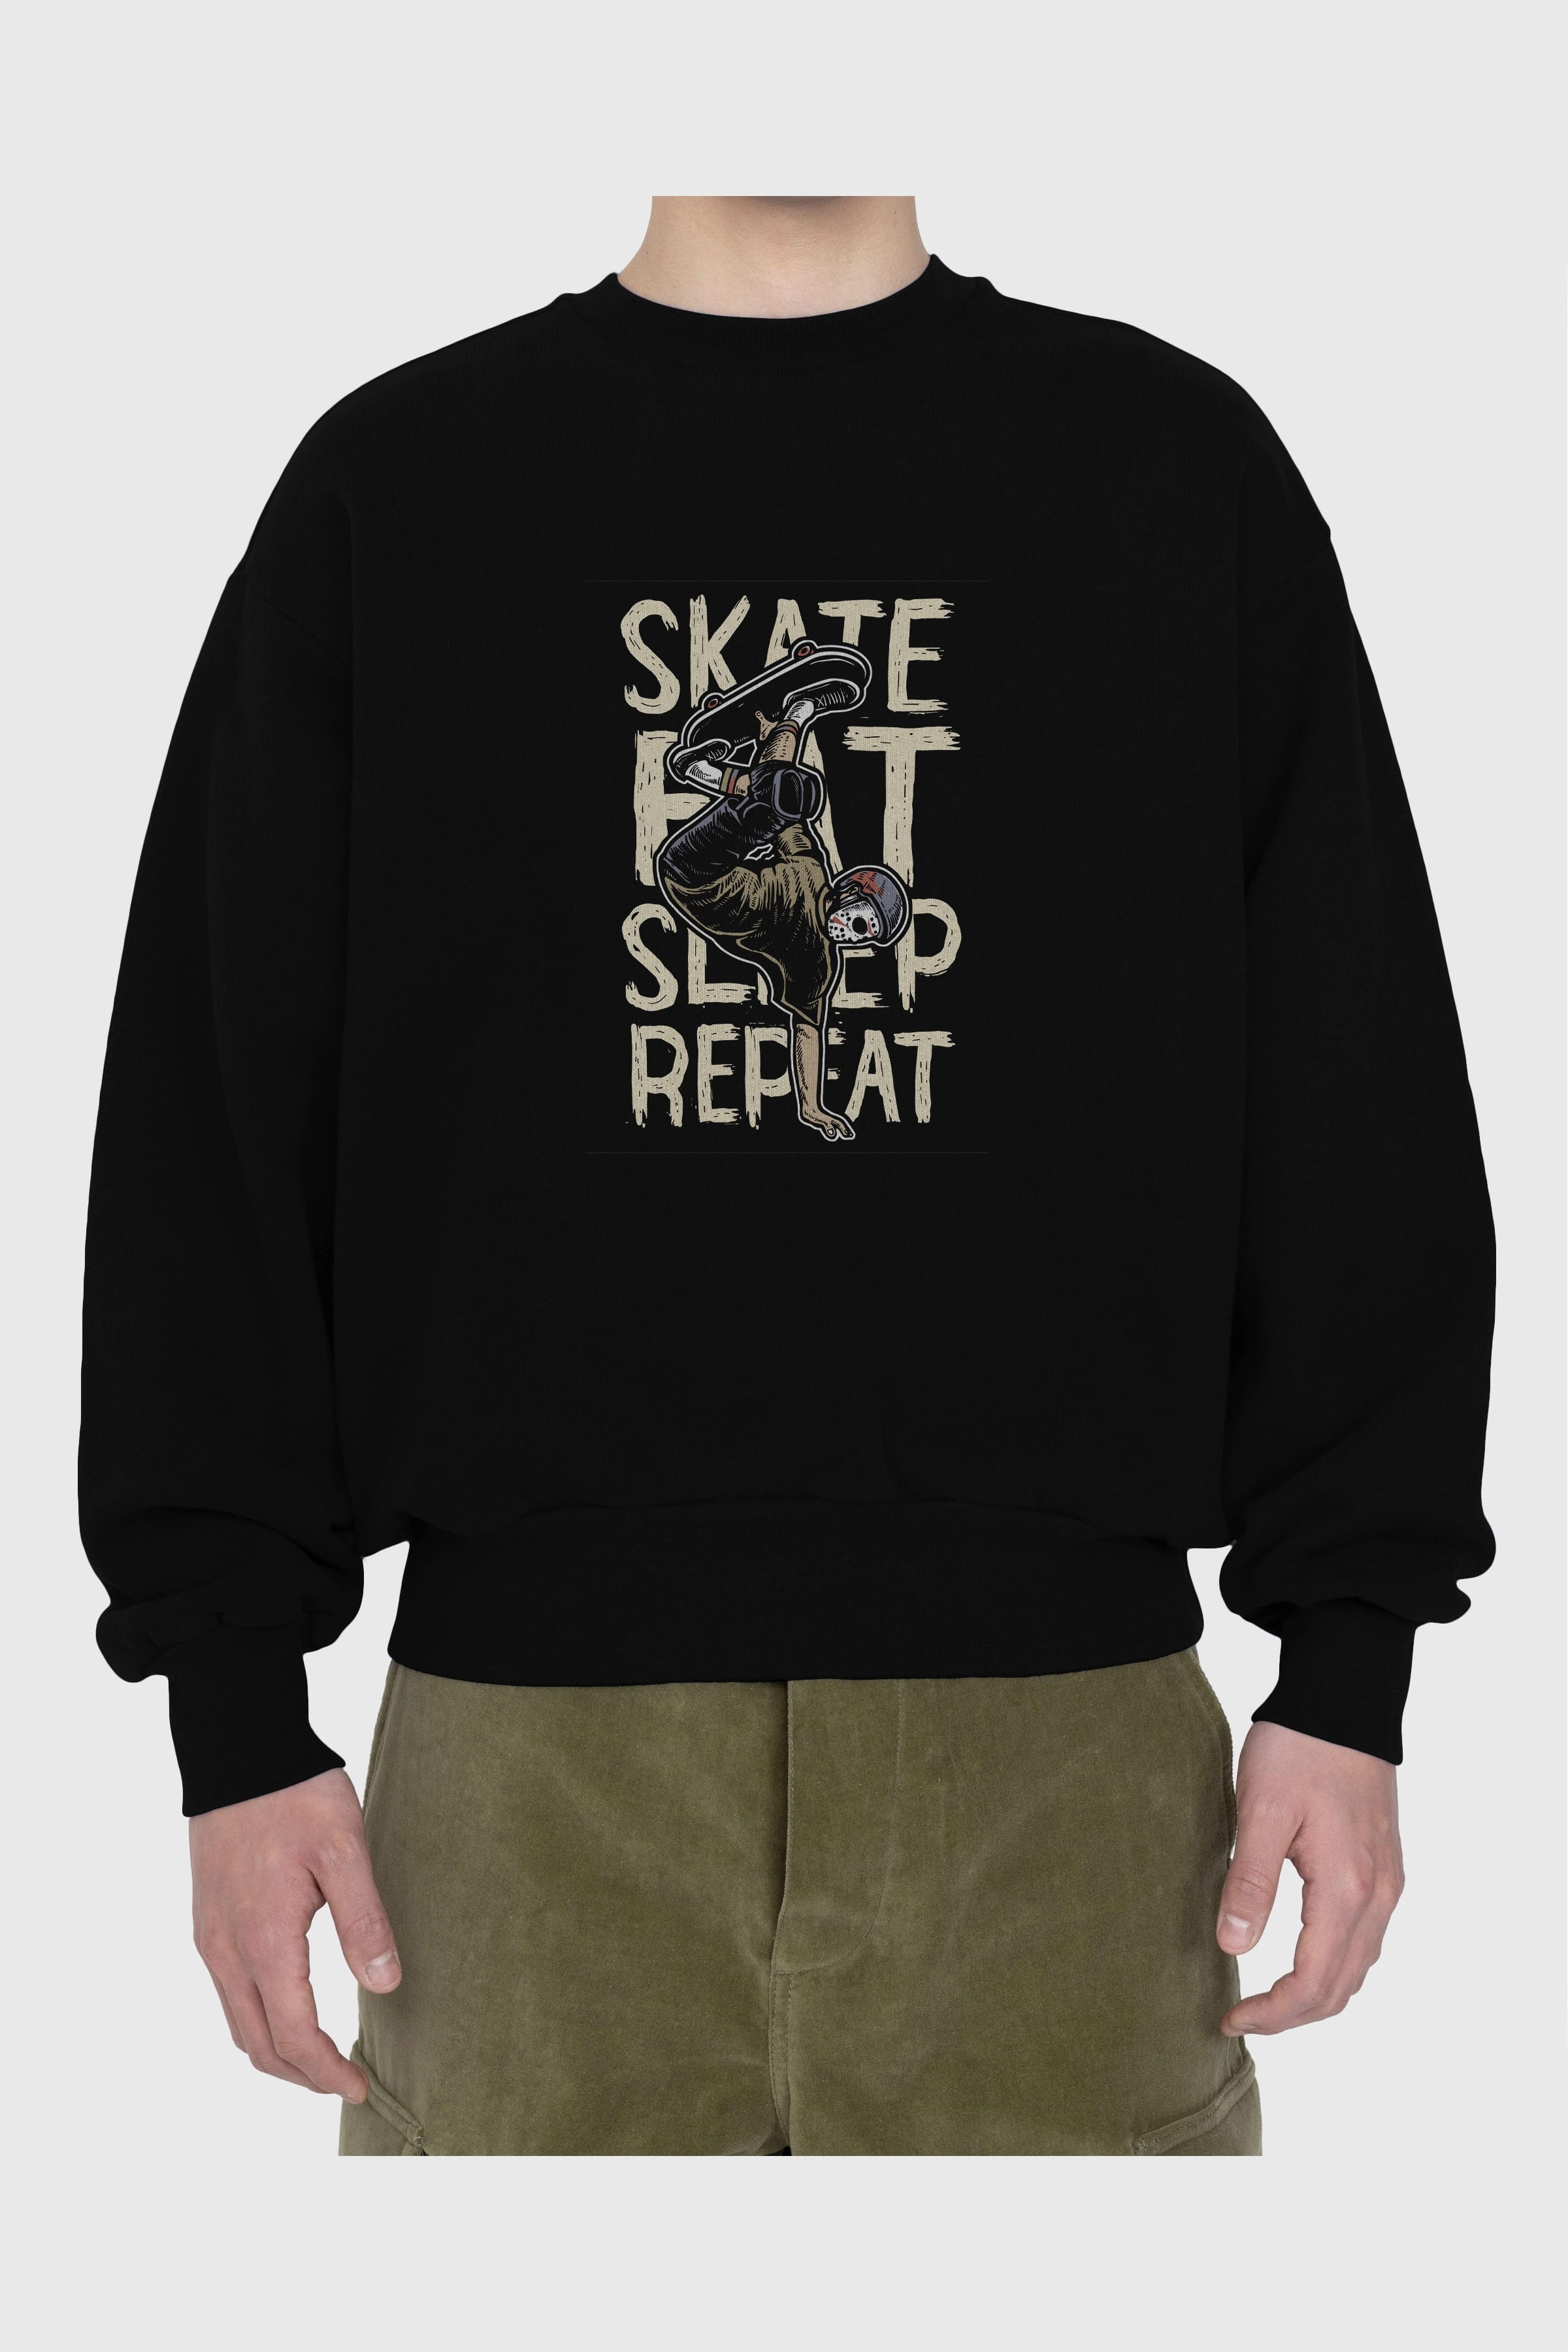 Skate Eat Sleep Repeat Ön Baskılı Oversize Sweatshirt Erkek Kadın Unisex